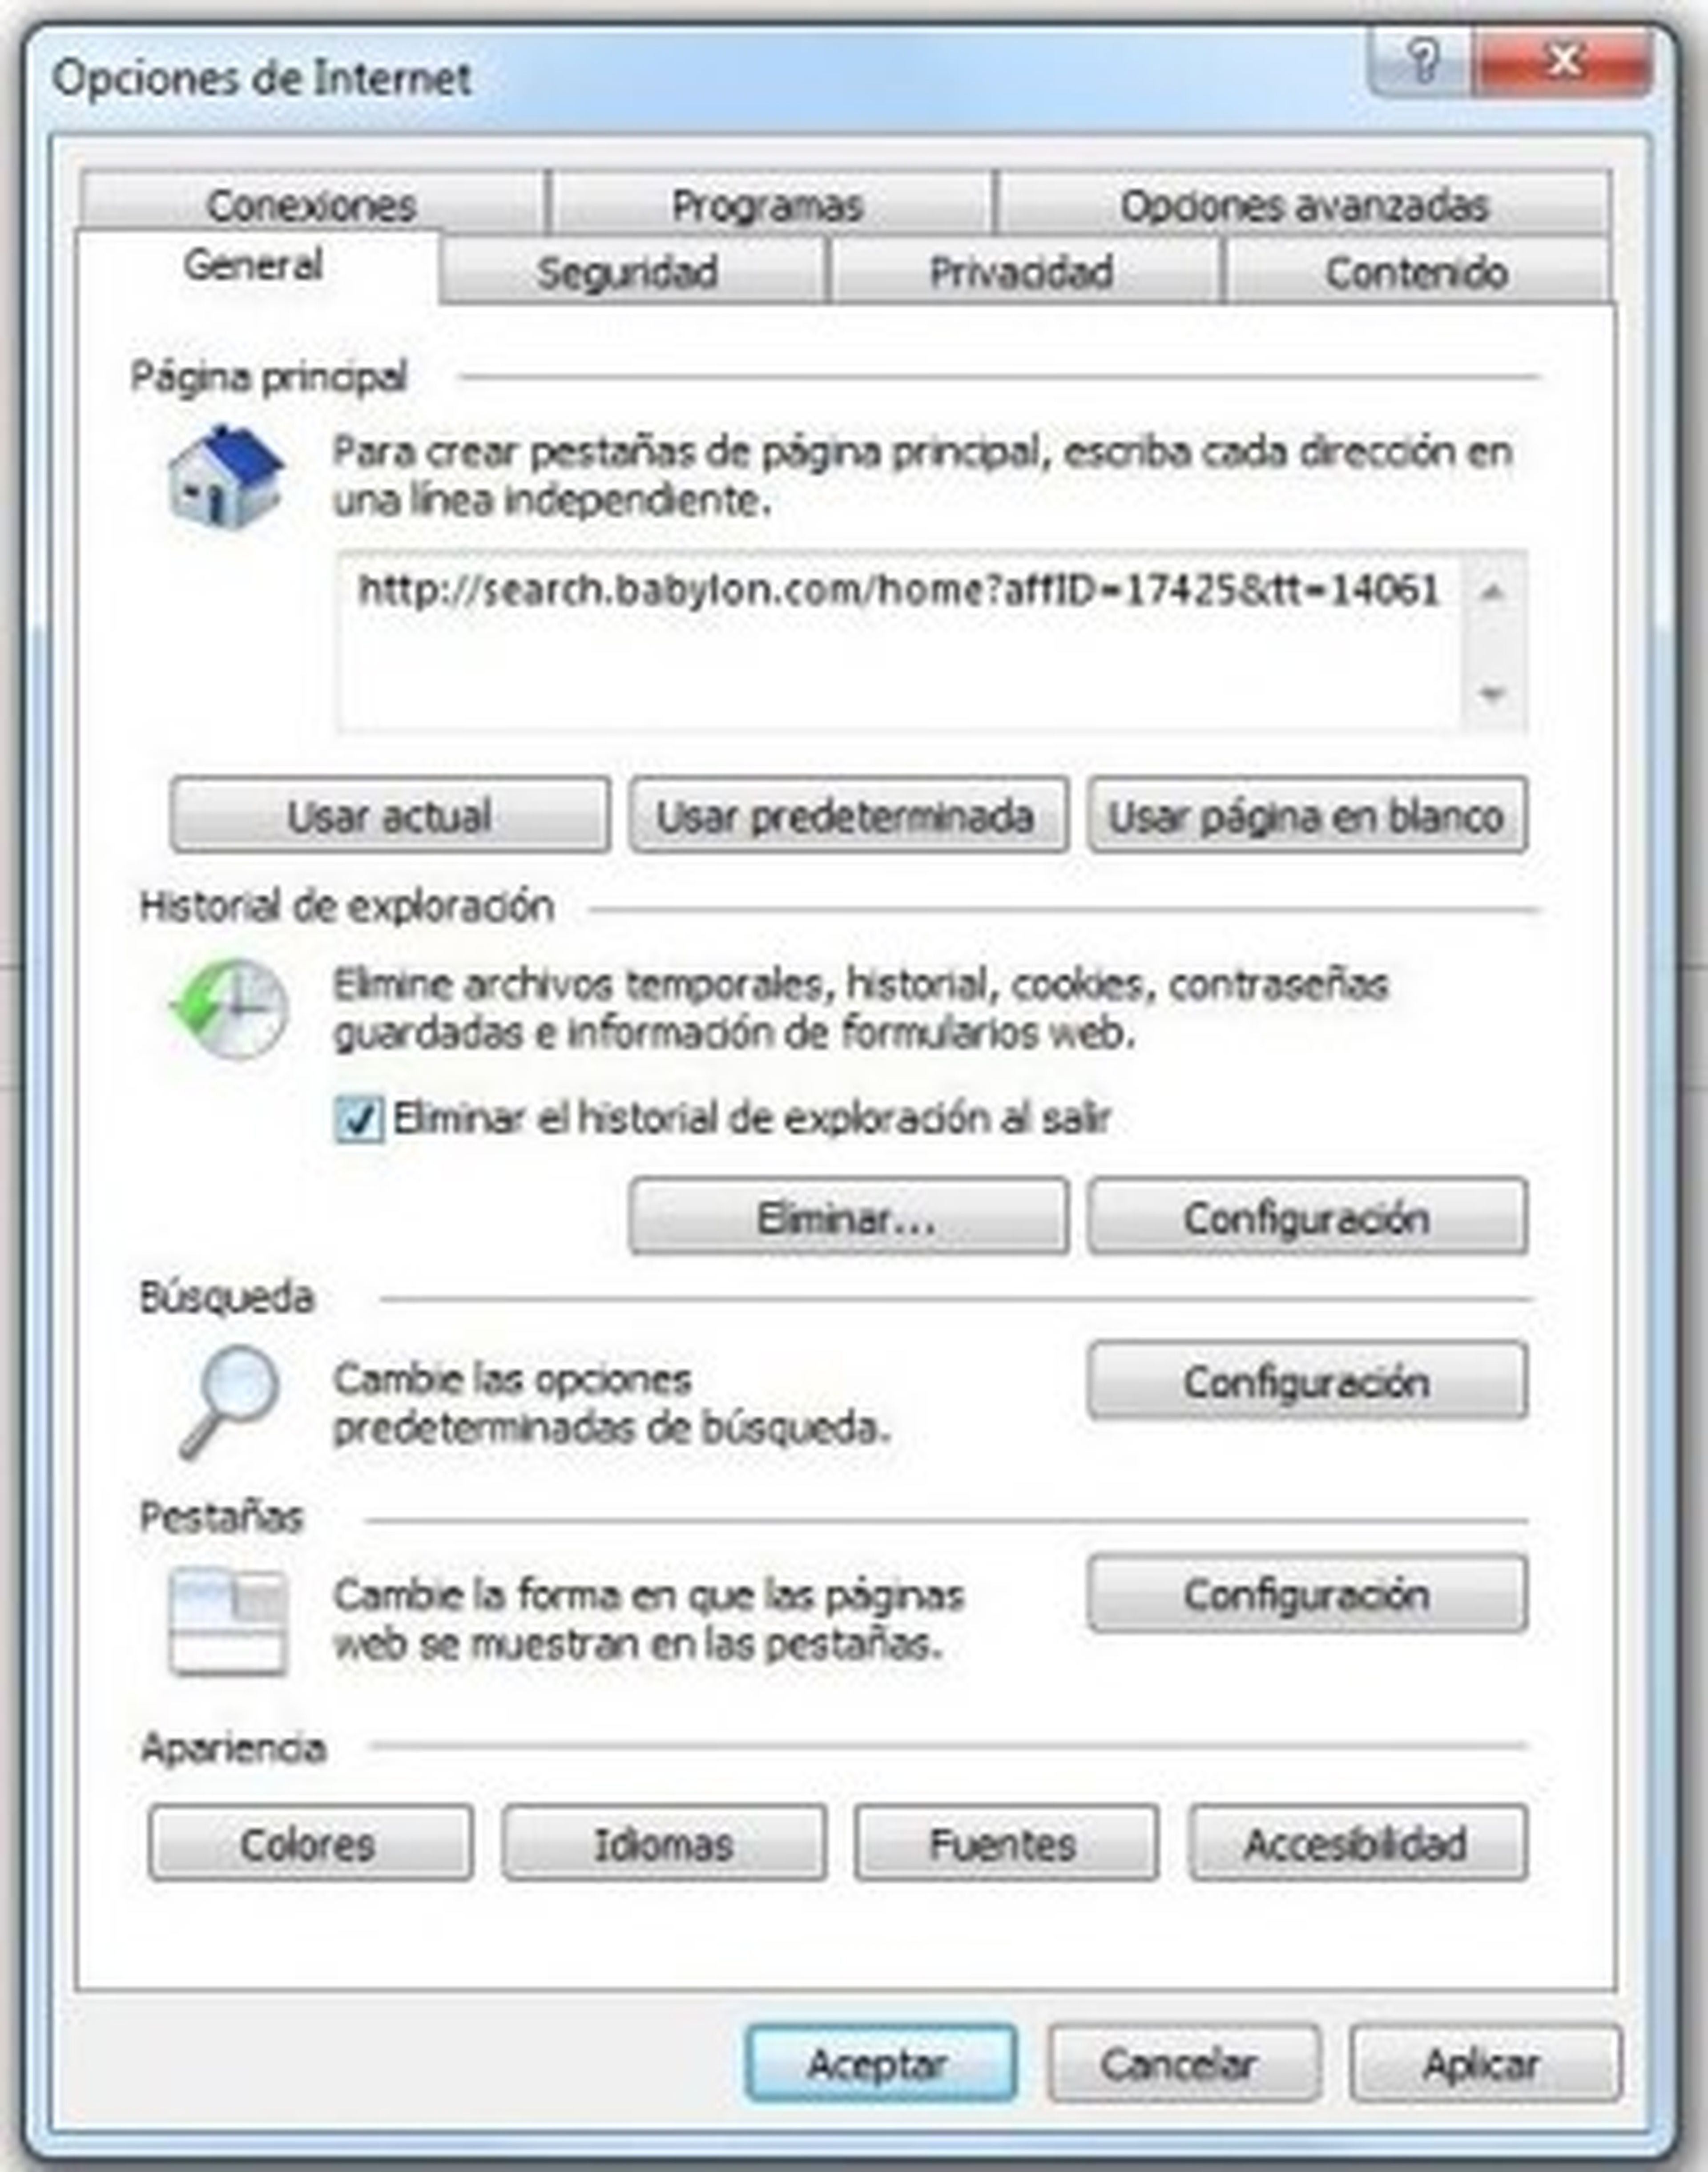 Interfaz de Internet Explorer 9 con las opciones de Internet abiertas